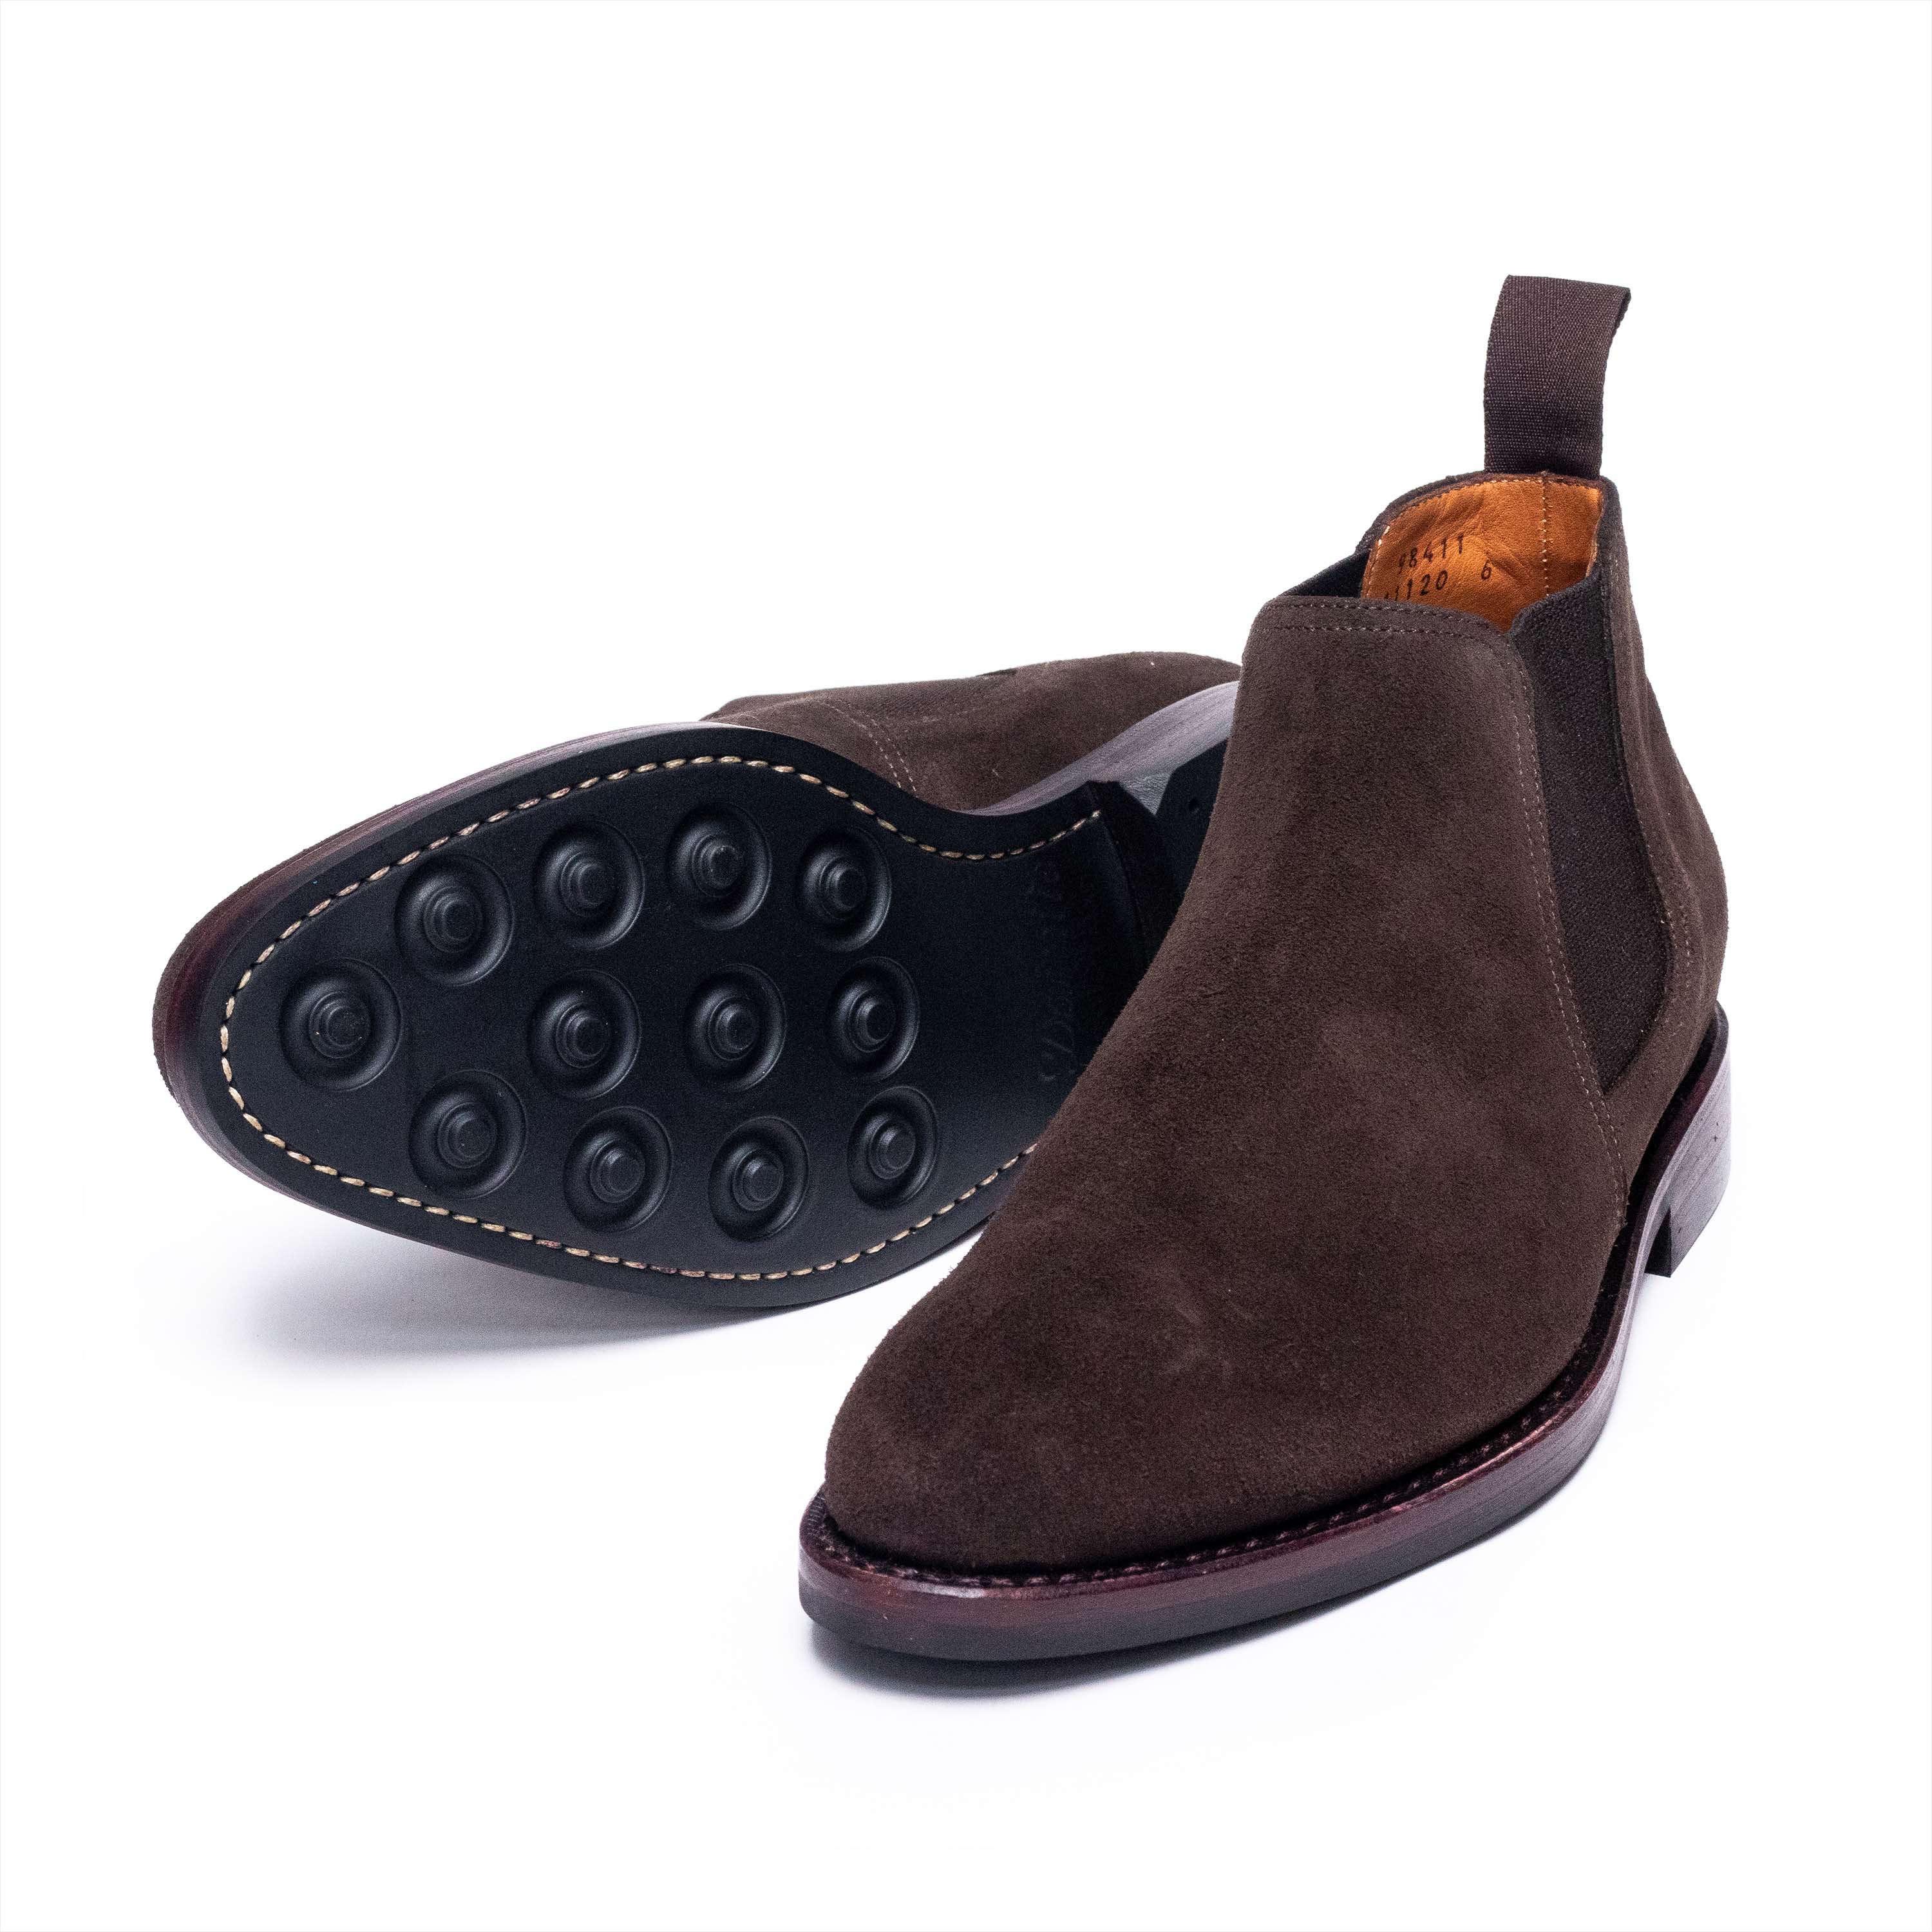 Men's Chelsea Boots / Dark Brown Suede 98411